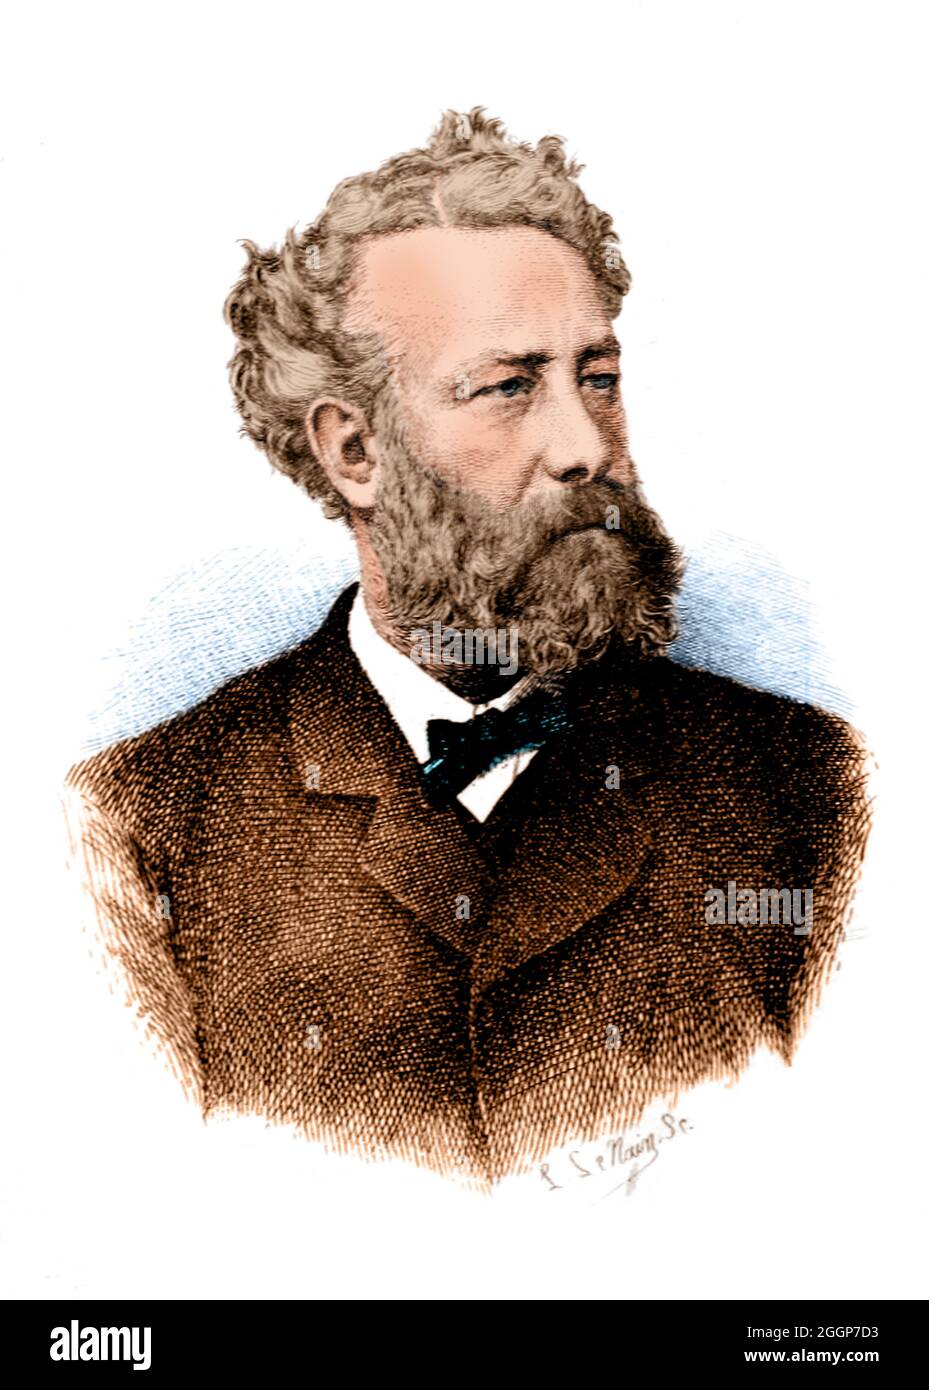 Jules Verne (1828-1905) fue un novelista, poeta y dramaturgo francés que fue pionero en el género de ciencia ficción. Foto de stock